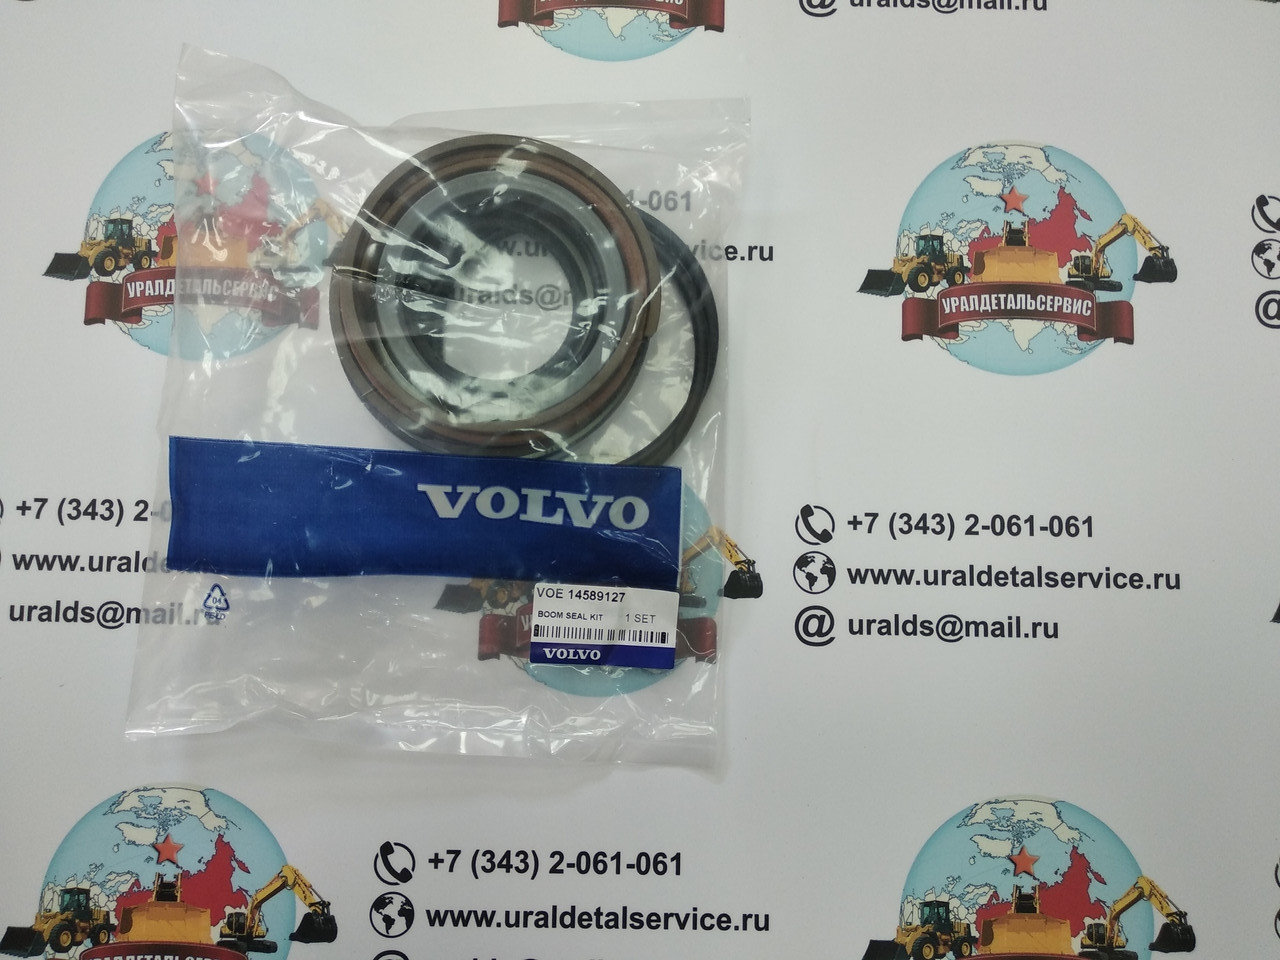 Ремкомплект г/ц стрелы 14589127 Volvo EC180BLC в городе Екатеринбург, фото 1, телефон продавца: +7 (343) 206-10-61